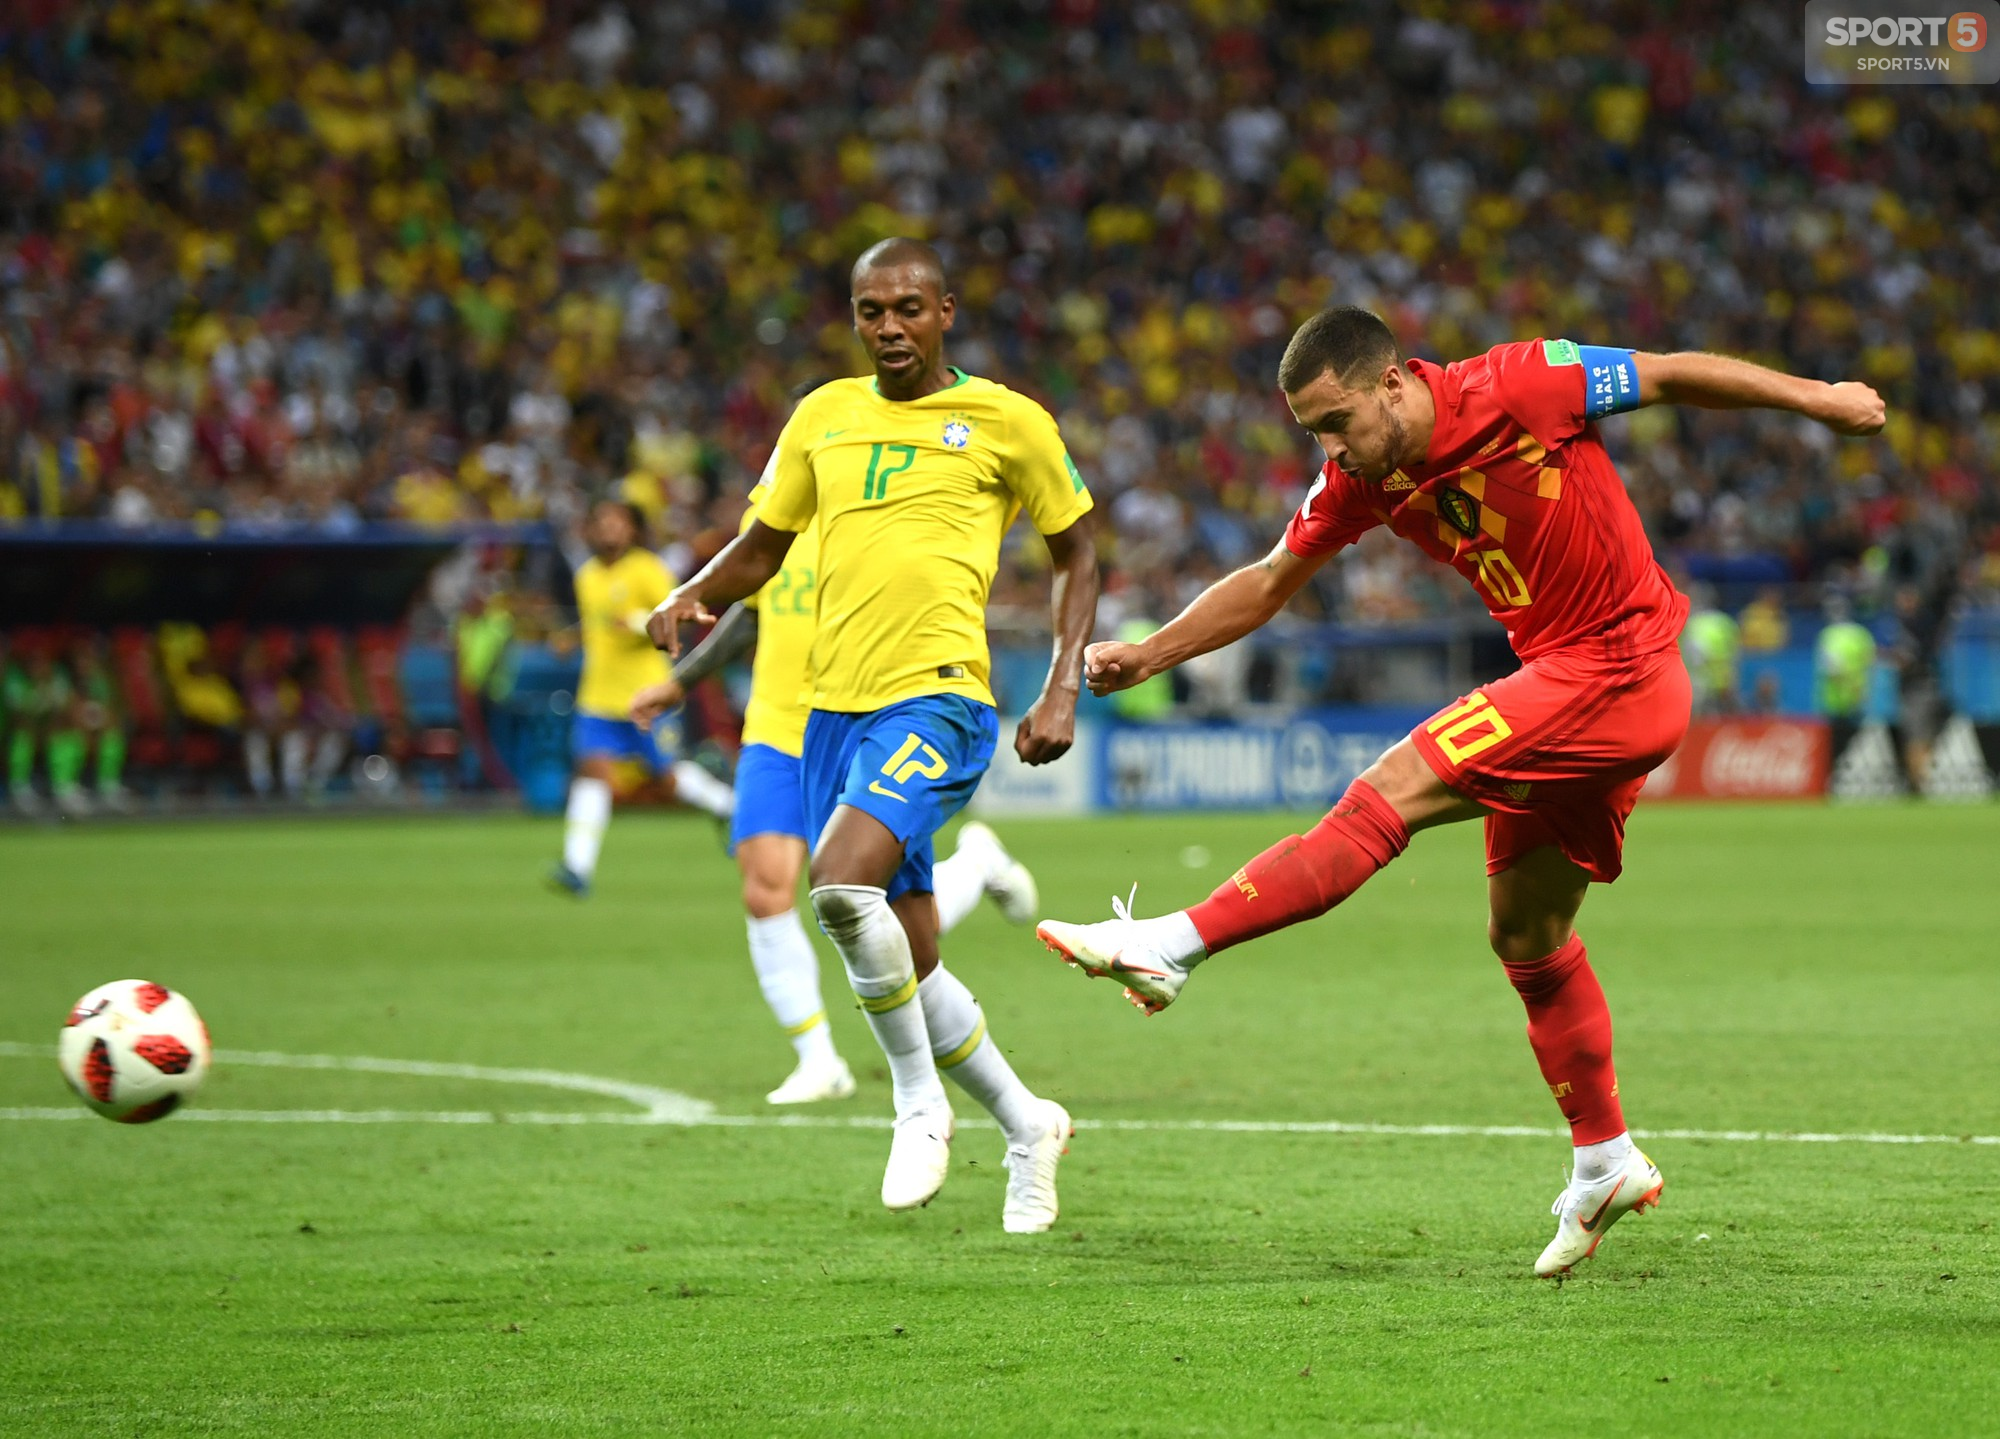 Thành tích của Hazard bằng cả tuyển Brazil cộng lại - Ảnh 4.